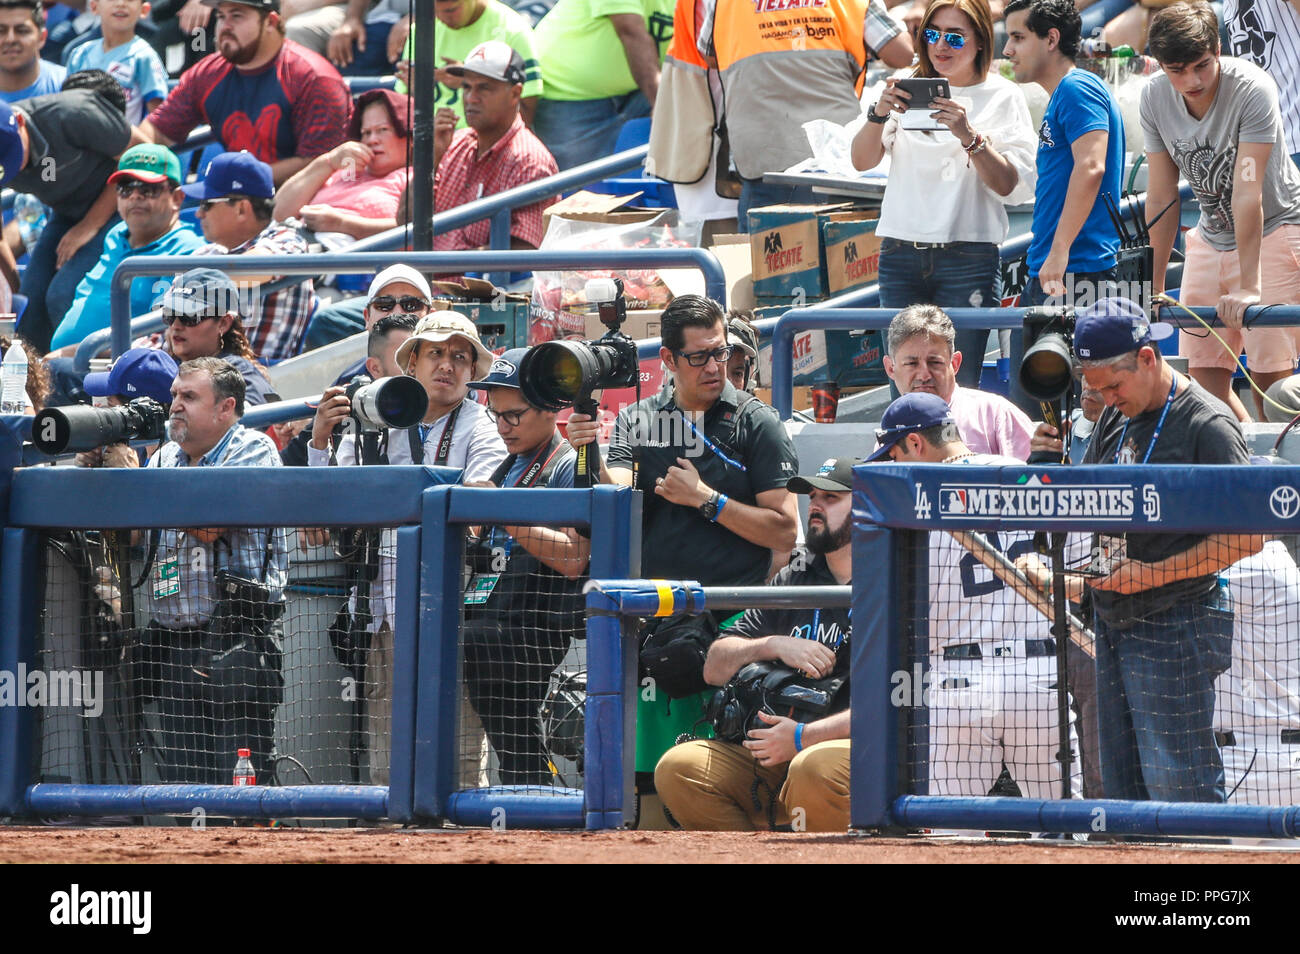 Fotografos de Monterrey. Reuters. Acciones del Partido de beisbol, Dodgers de Los Angeles contra Padres de San Diego, tercer juego de la Serie en Mex Foto Stock